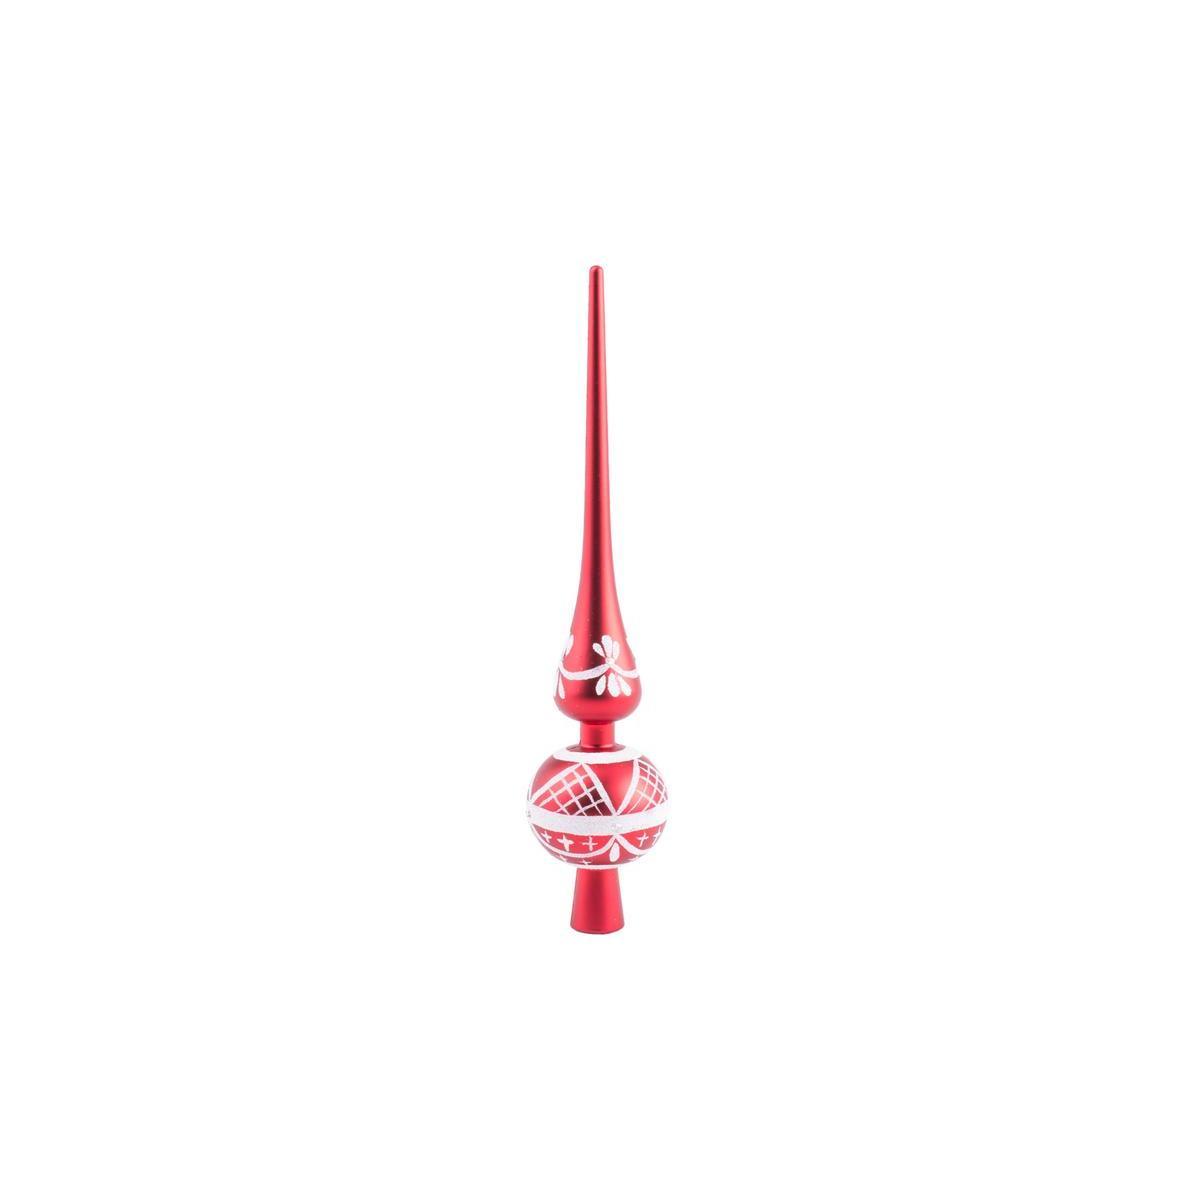 Cimier - Plastique - H 28 cm - Rouge et blanc